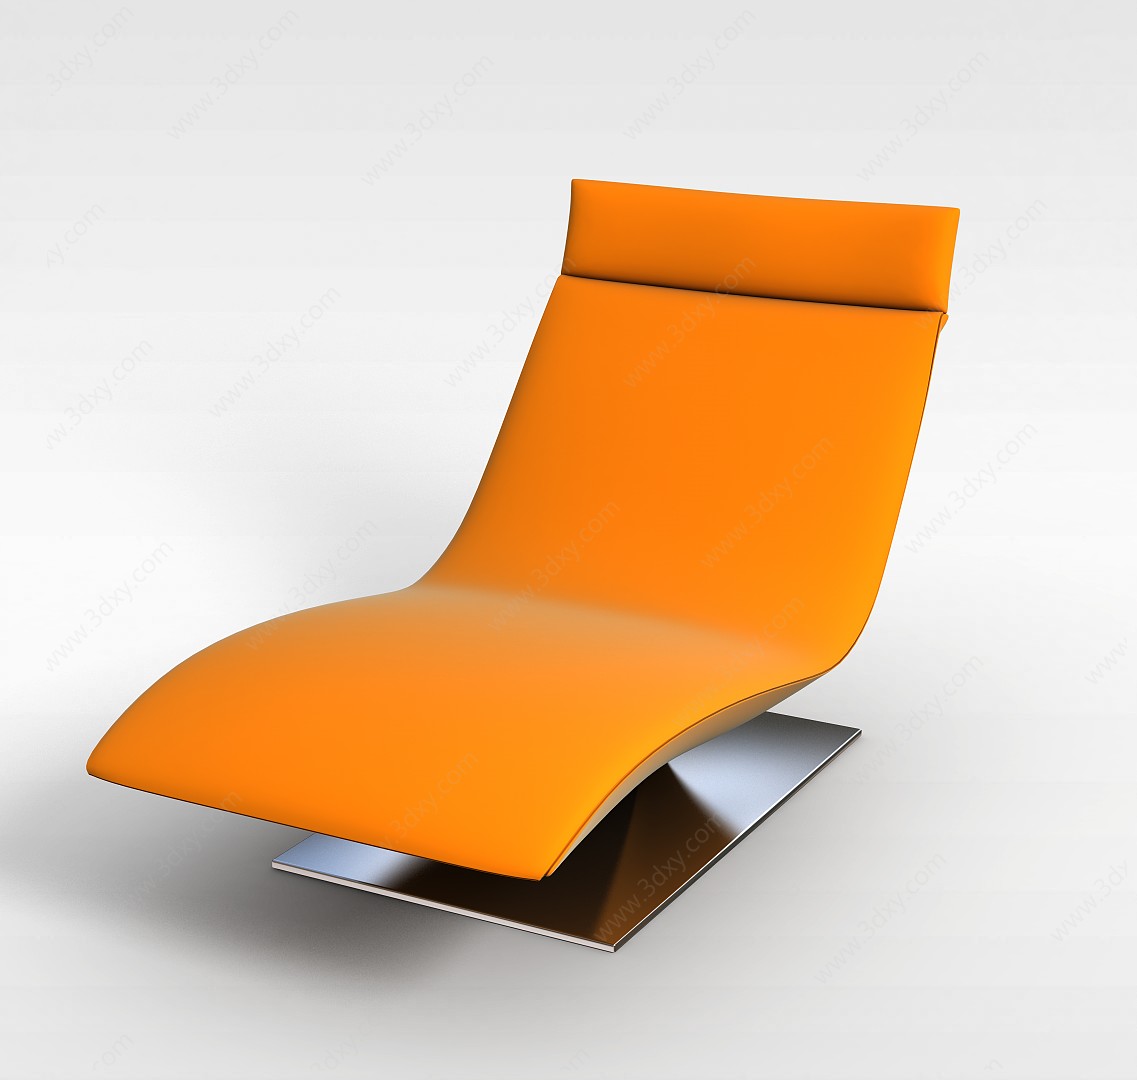 黄色个性沙发3D模型